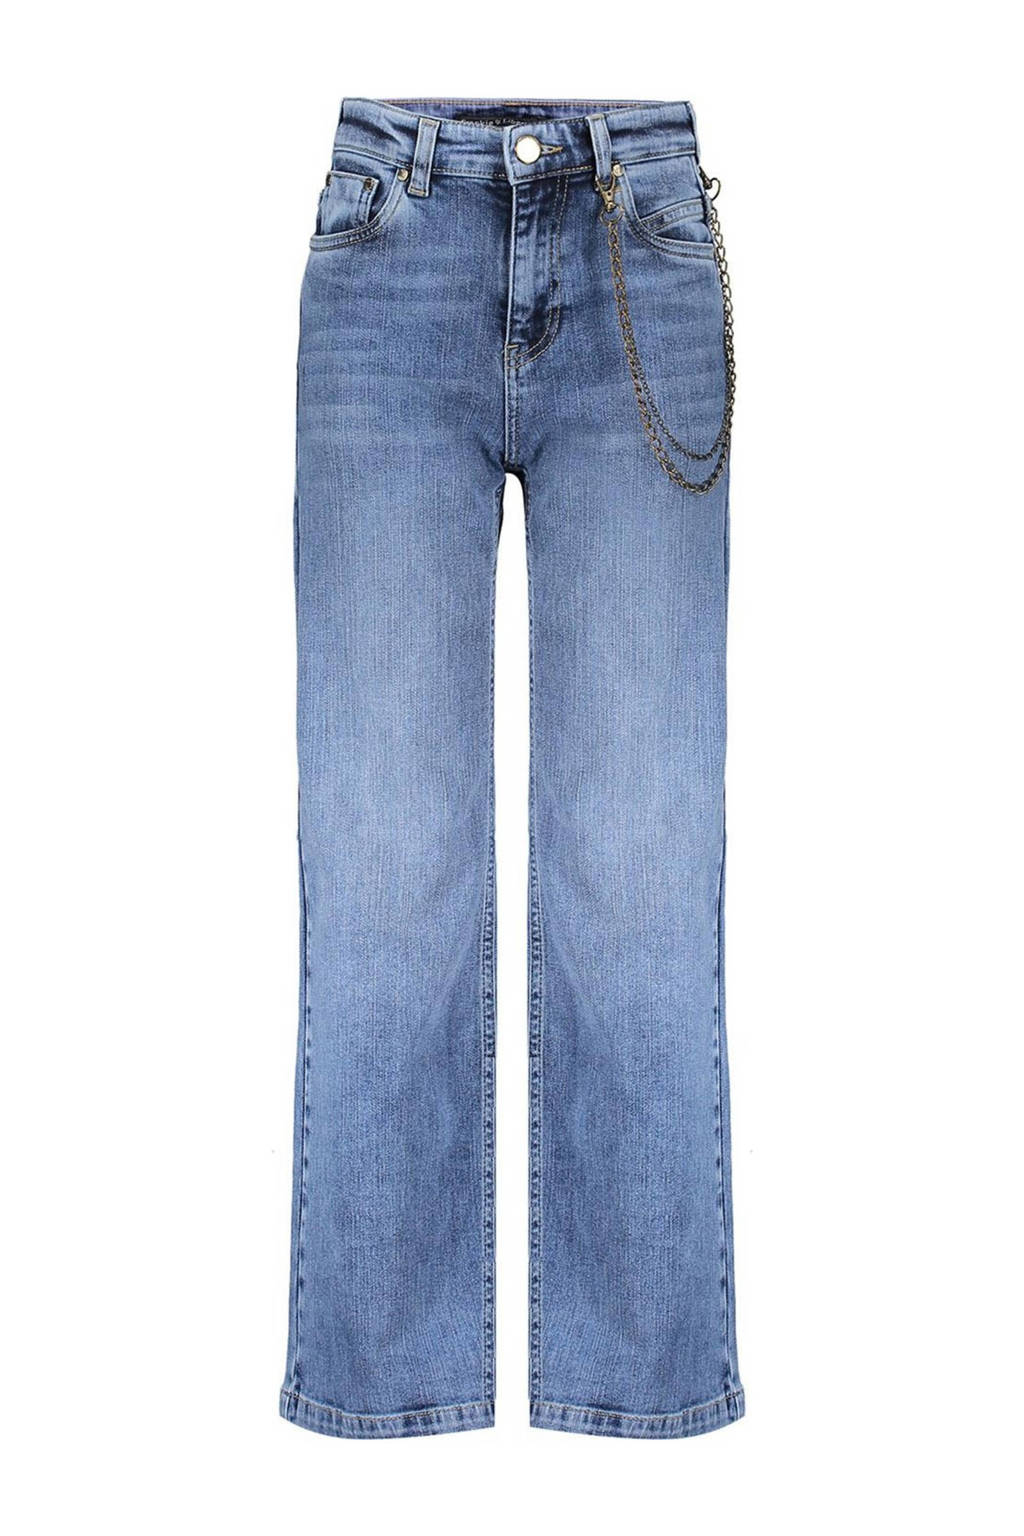 wide leg jeans Attitude vintage blue denim